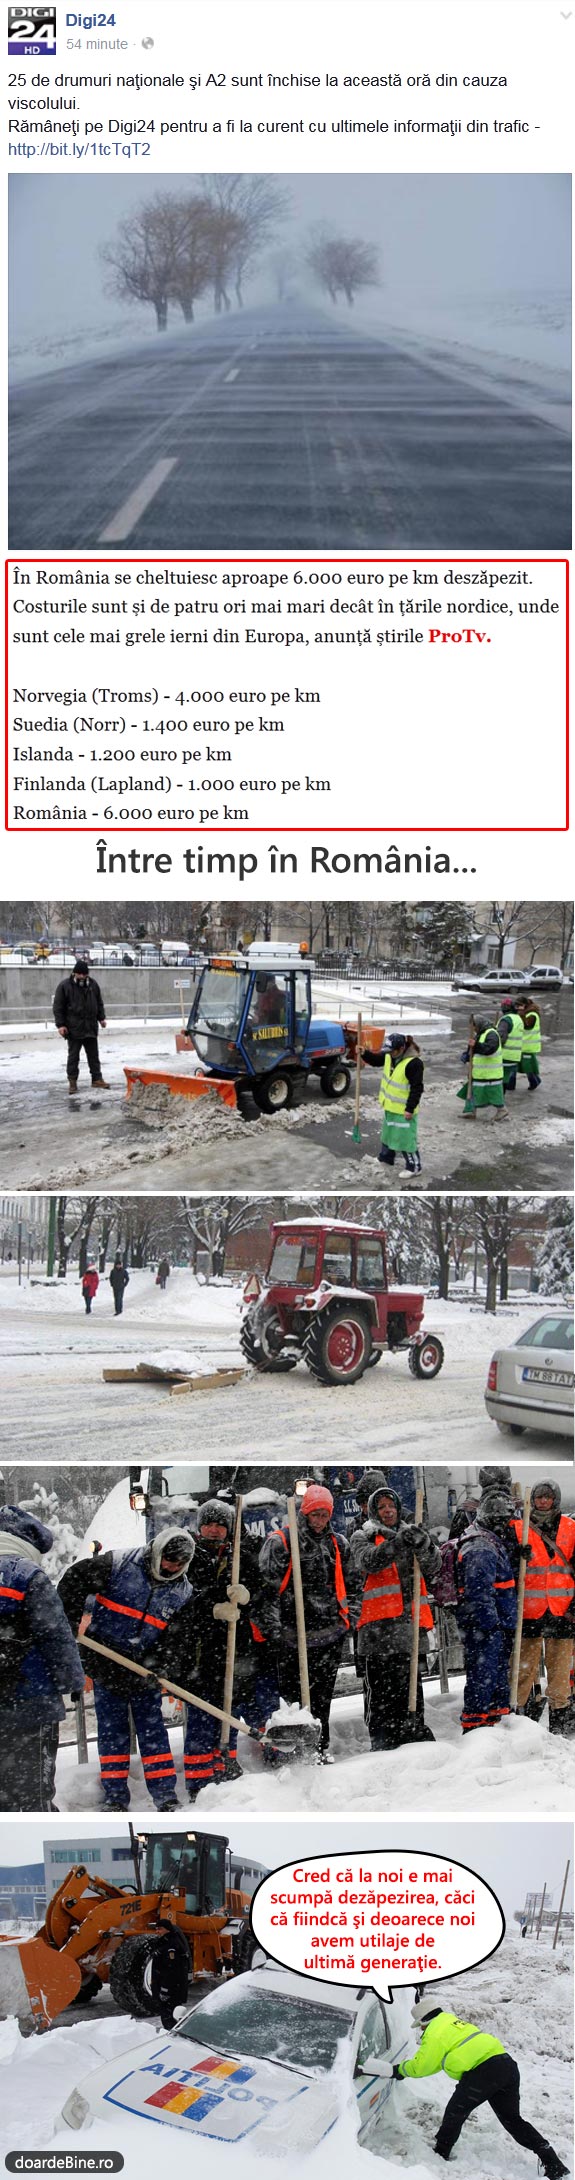 Dezăpezirea în România | poze haioase